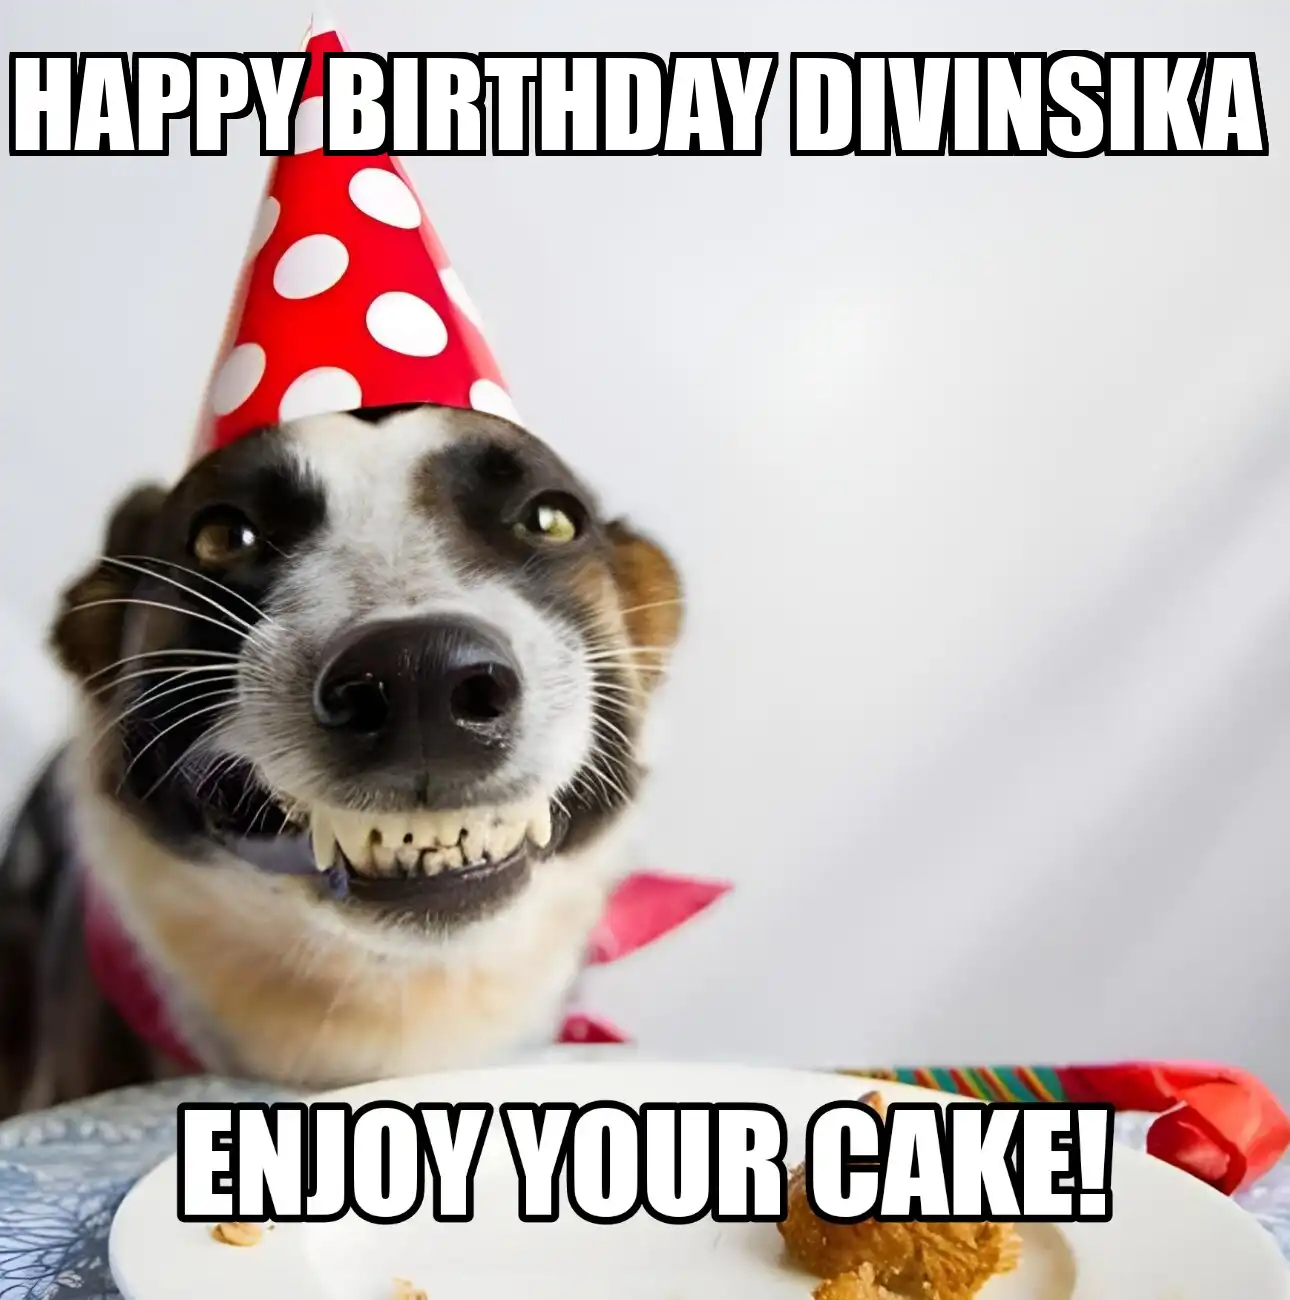 Happy Birthday Divinsika Enjoy Your Cake Dog Meme